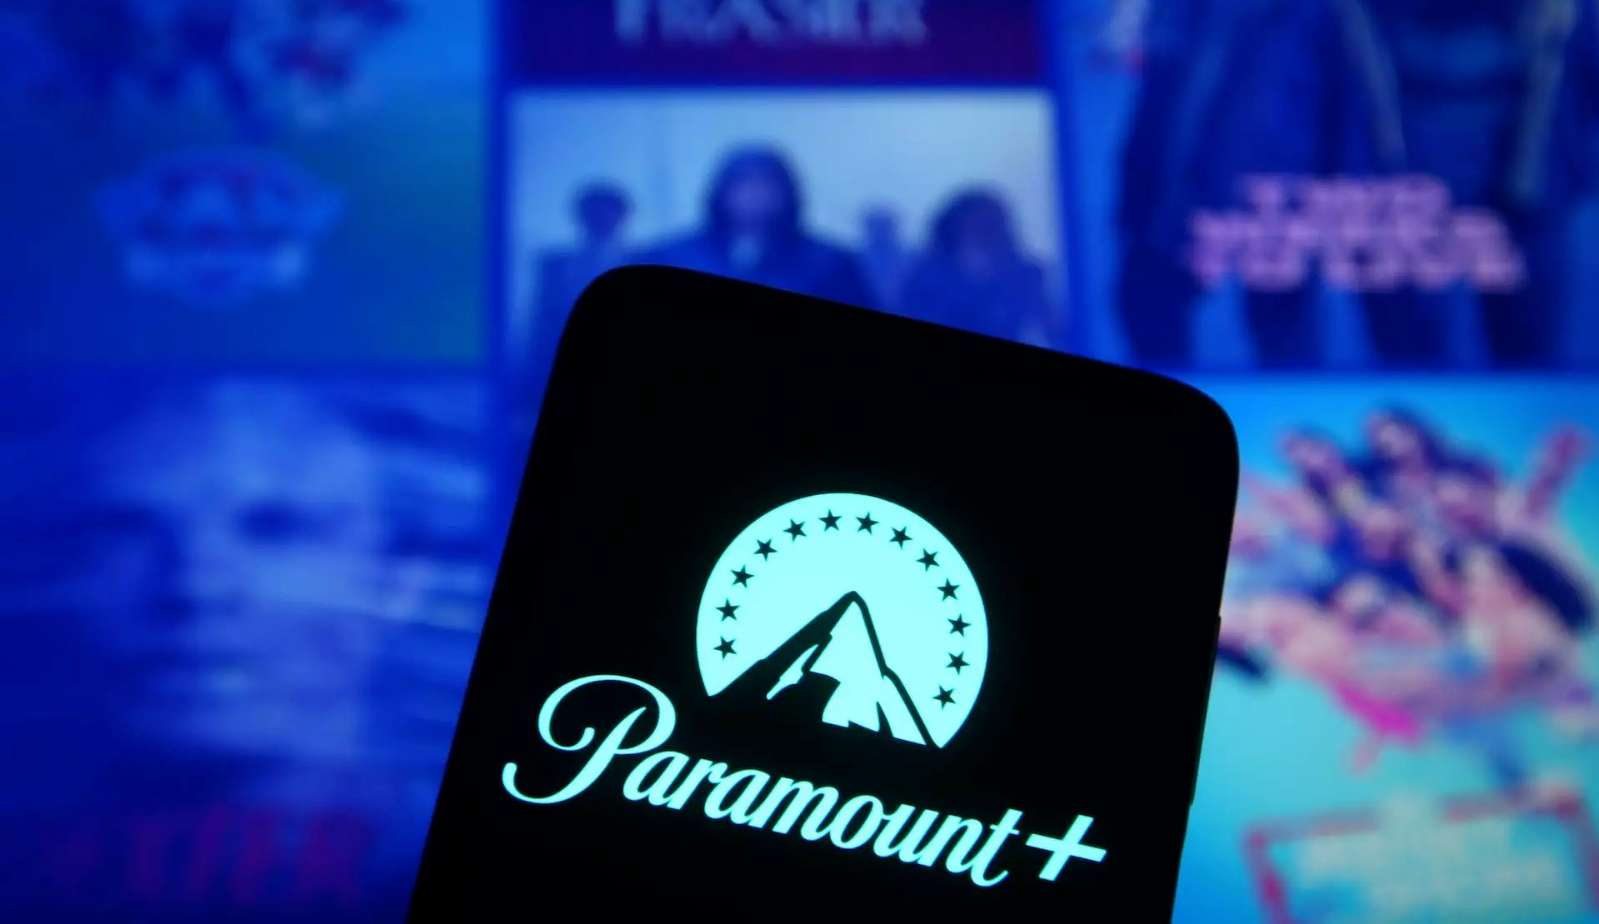 Diretora da Paramount+ marca presença no Rio2C e fala sobre 'engajamento emocional'